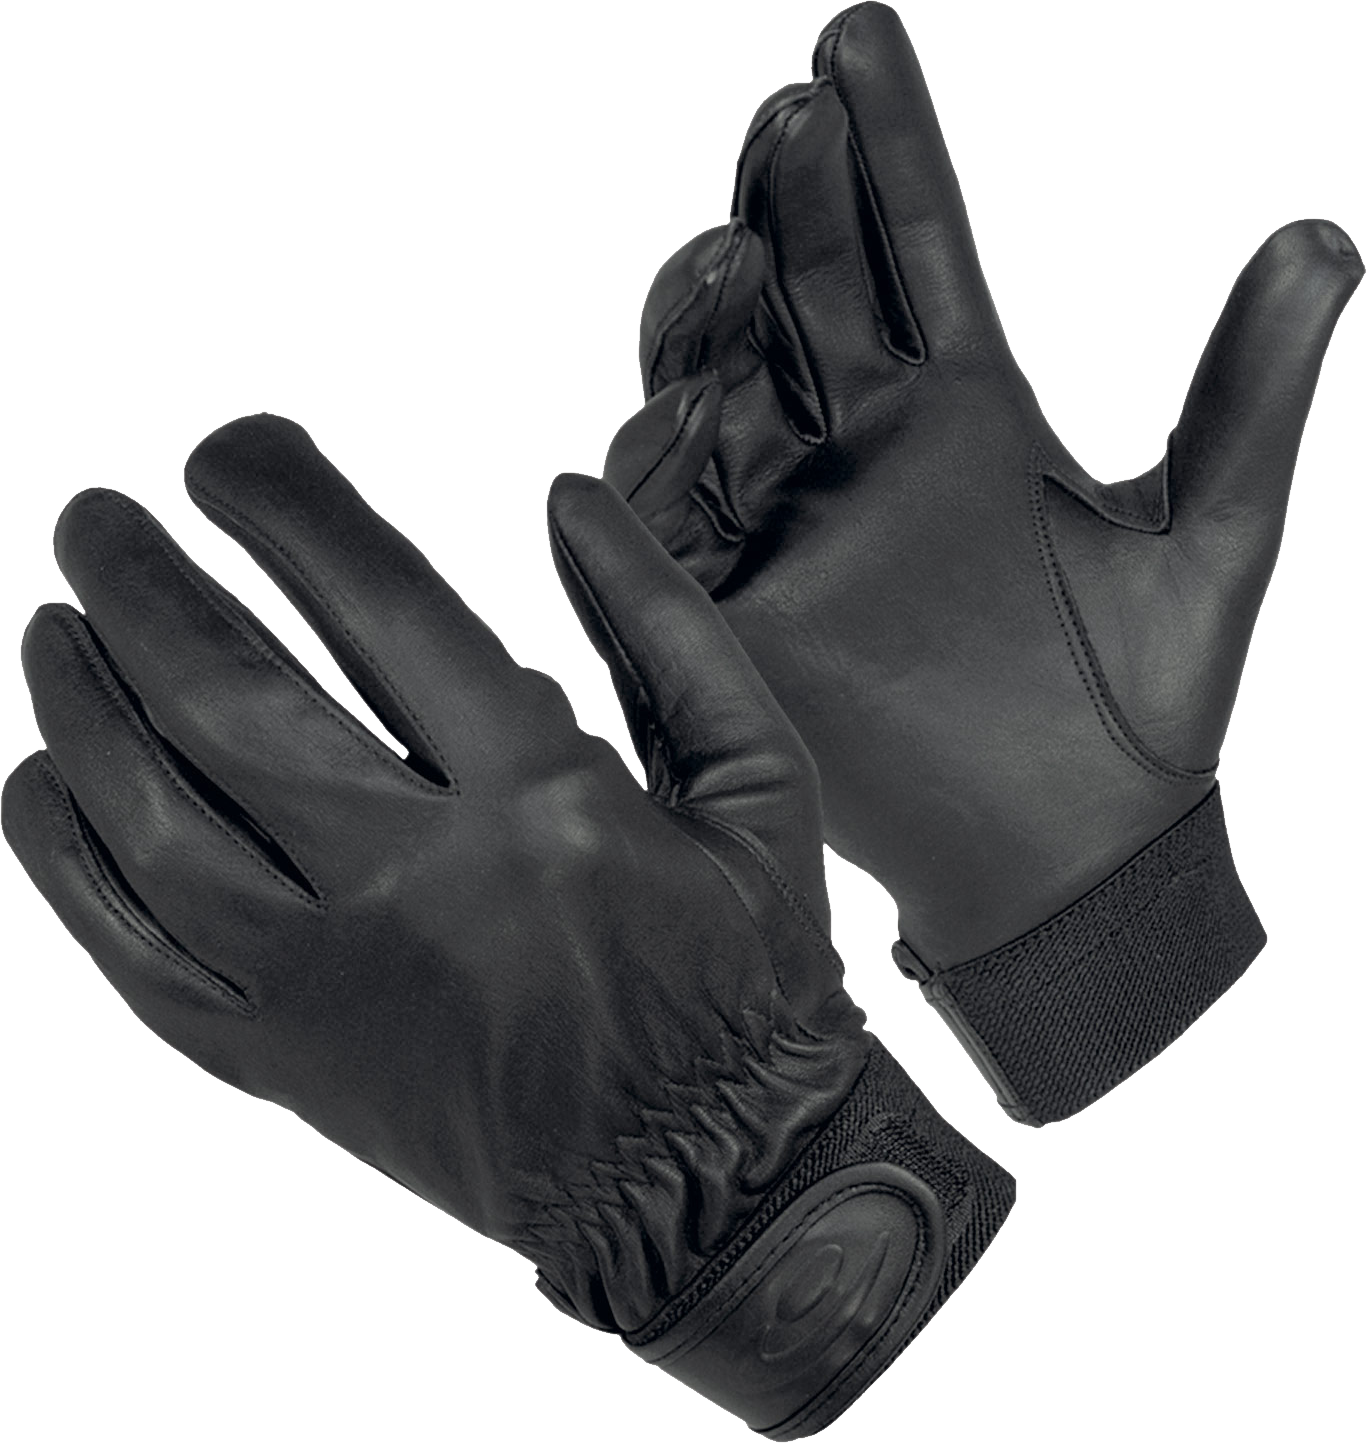 Des gants de cuir